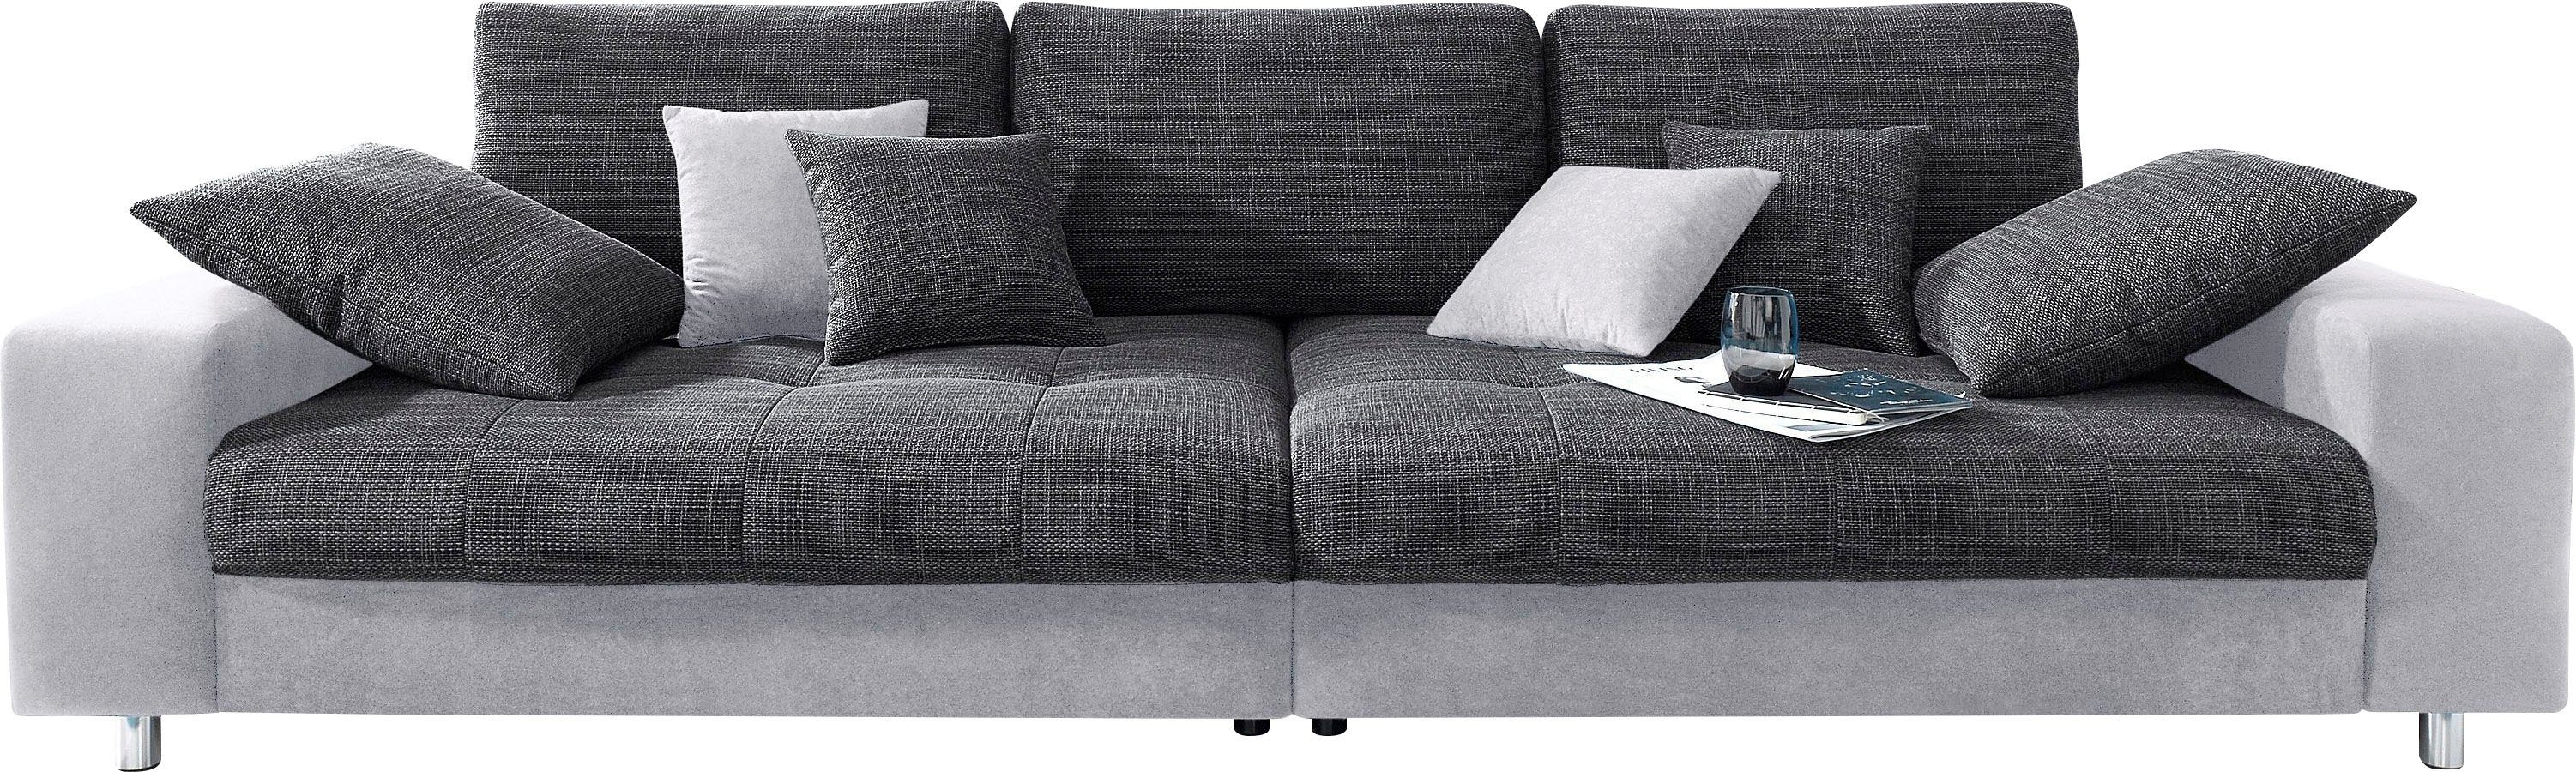 Mr. Couch Big-Sofa Wahlweise mit Kaltschaum mit Belastung/Sitz) RGB-Beleuchtung, wahlweise und Sitzbelastung) (140kg (140kg Tobi, Kaltschaum